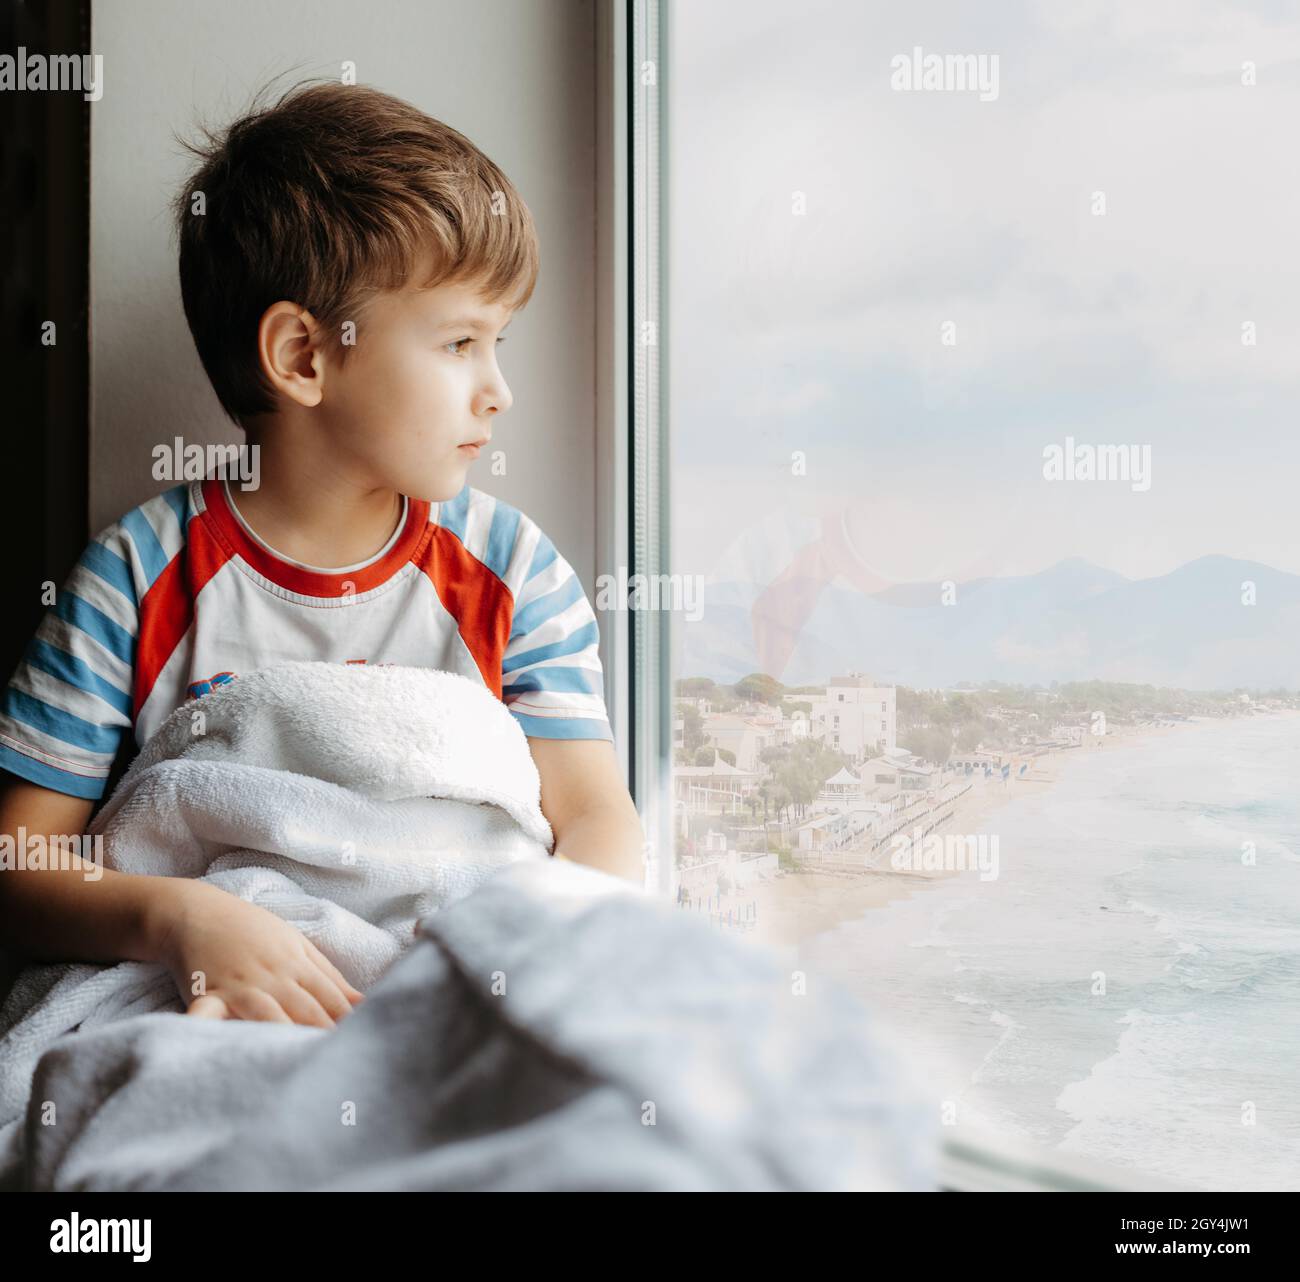 Triste petit garçon assis à la maison en quarantaine.Un enfant malade s'assoit près de la fenêtre et regarde la mer Banque D'Images